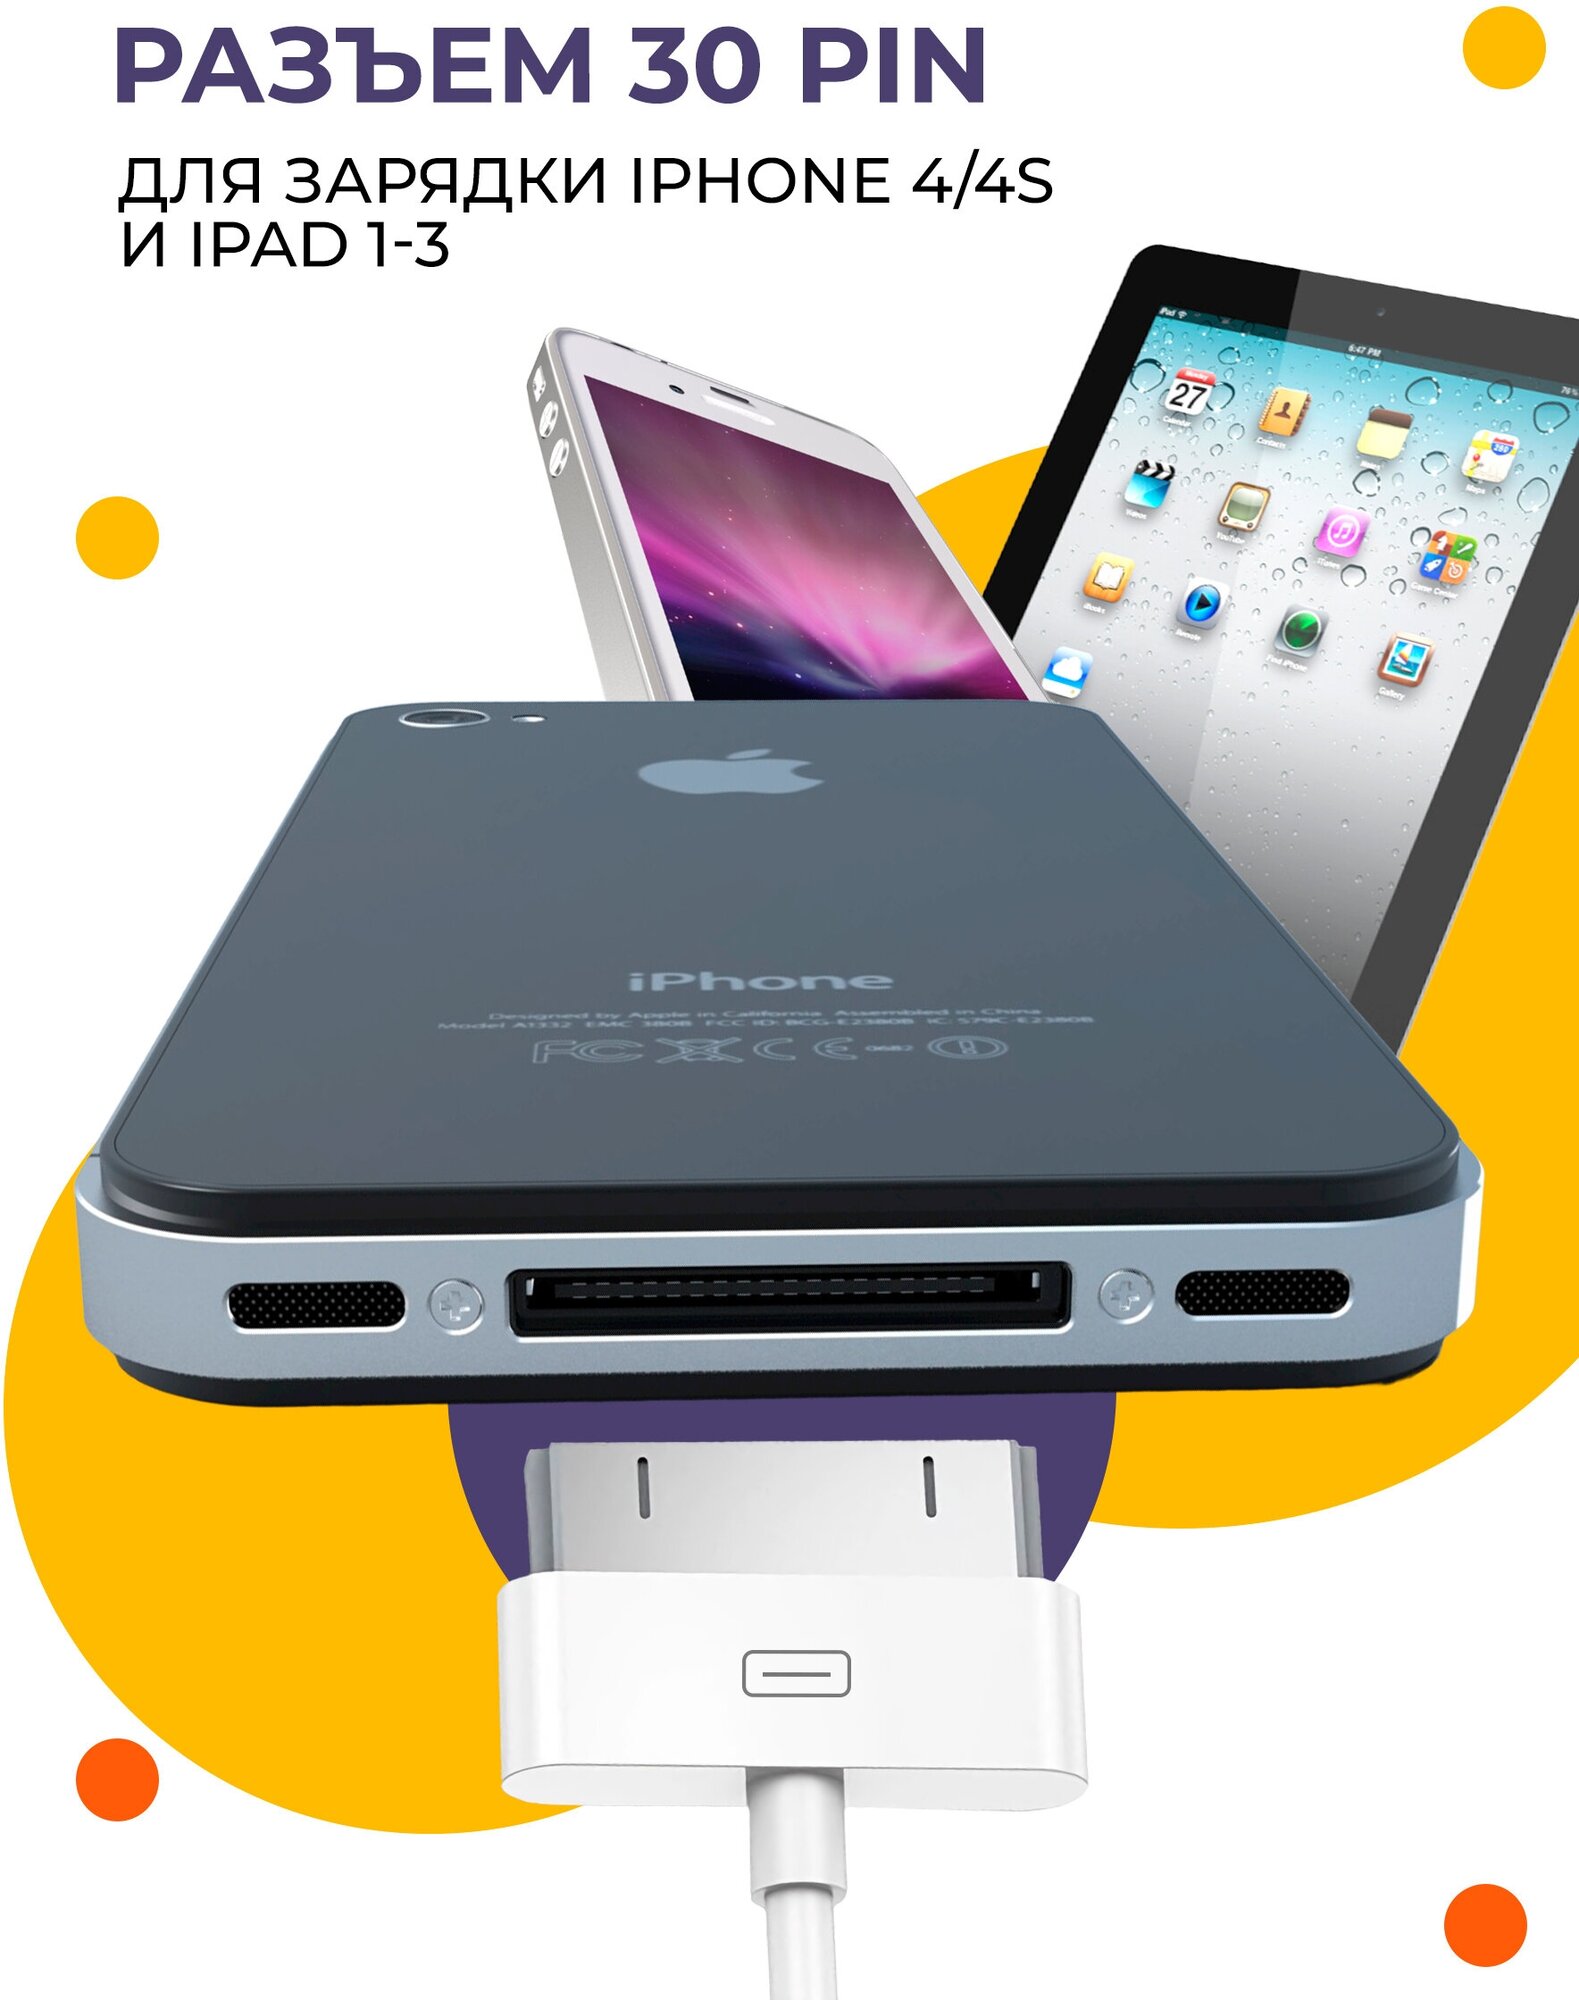 Зарядка для айфона / GQbox / Провод для айфона / Кабель для Iphone 4/4S, iPad 1-3 с Разъемом 30 Pin / USB провод для Айфона 4